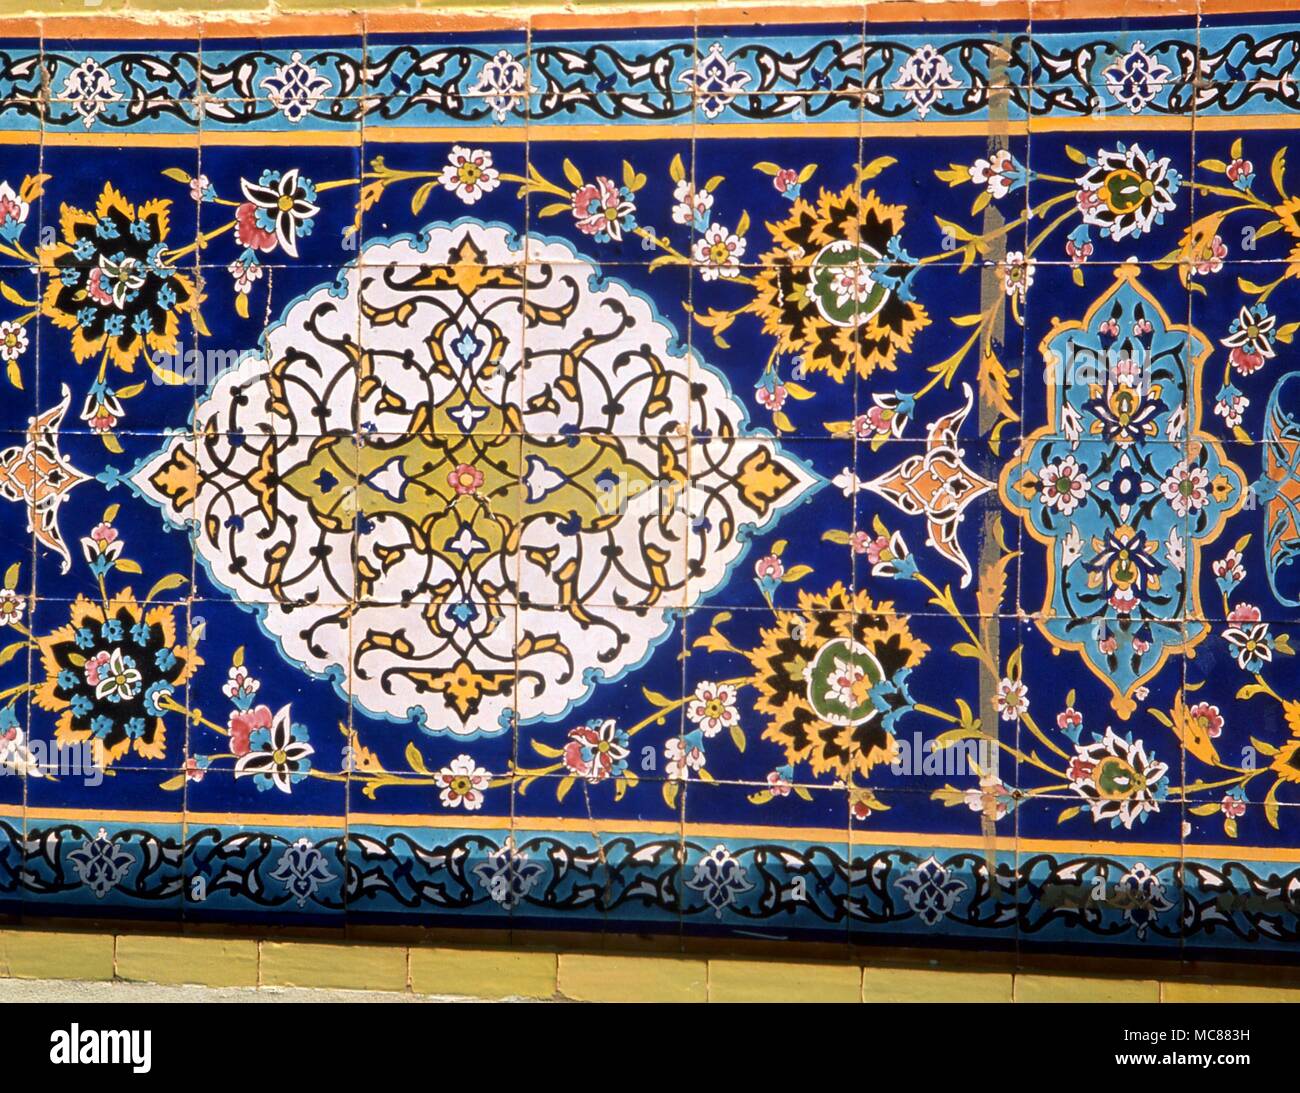 L'Islam. Tuiles dans le style arabesque islamique ainsi favorisée par les architectes. Tuiles de l'échantillon de l'extérieur d'une mosquée au Koweït. Banque D'Images